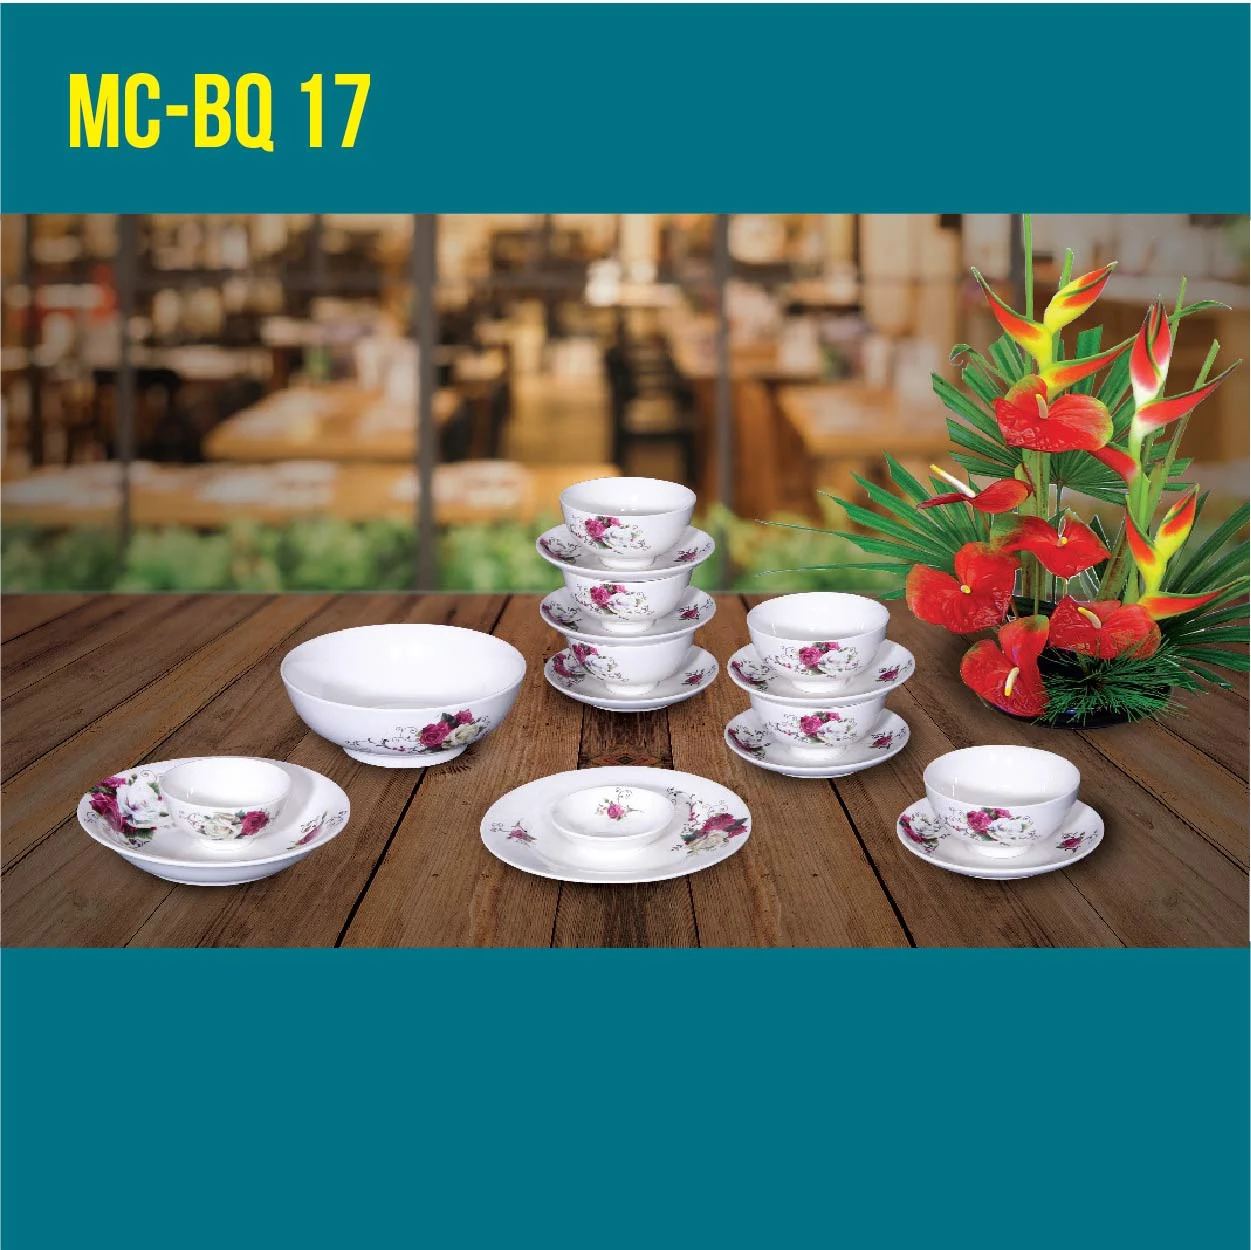 MC-BQ 17-05 Bộ quà tặng 17 sản phẩm sứ xương cao cấp Minh Châu Hảo Cảnh